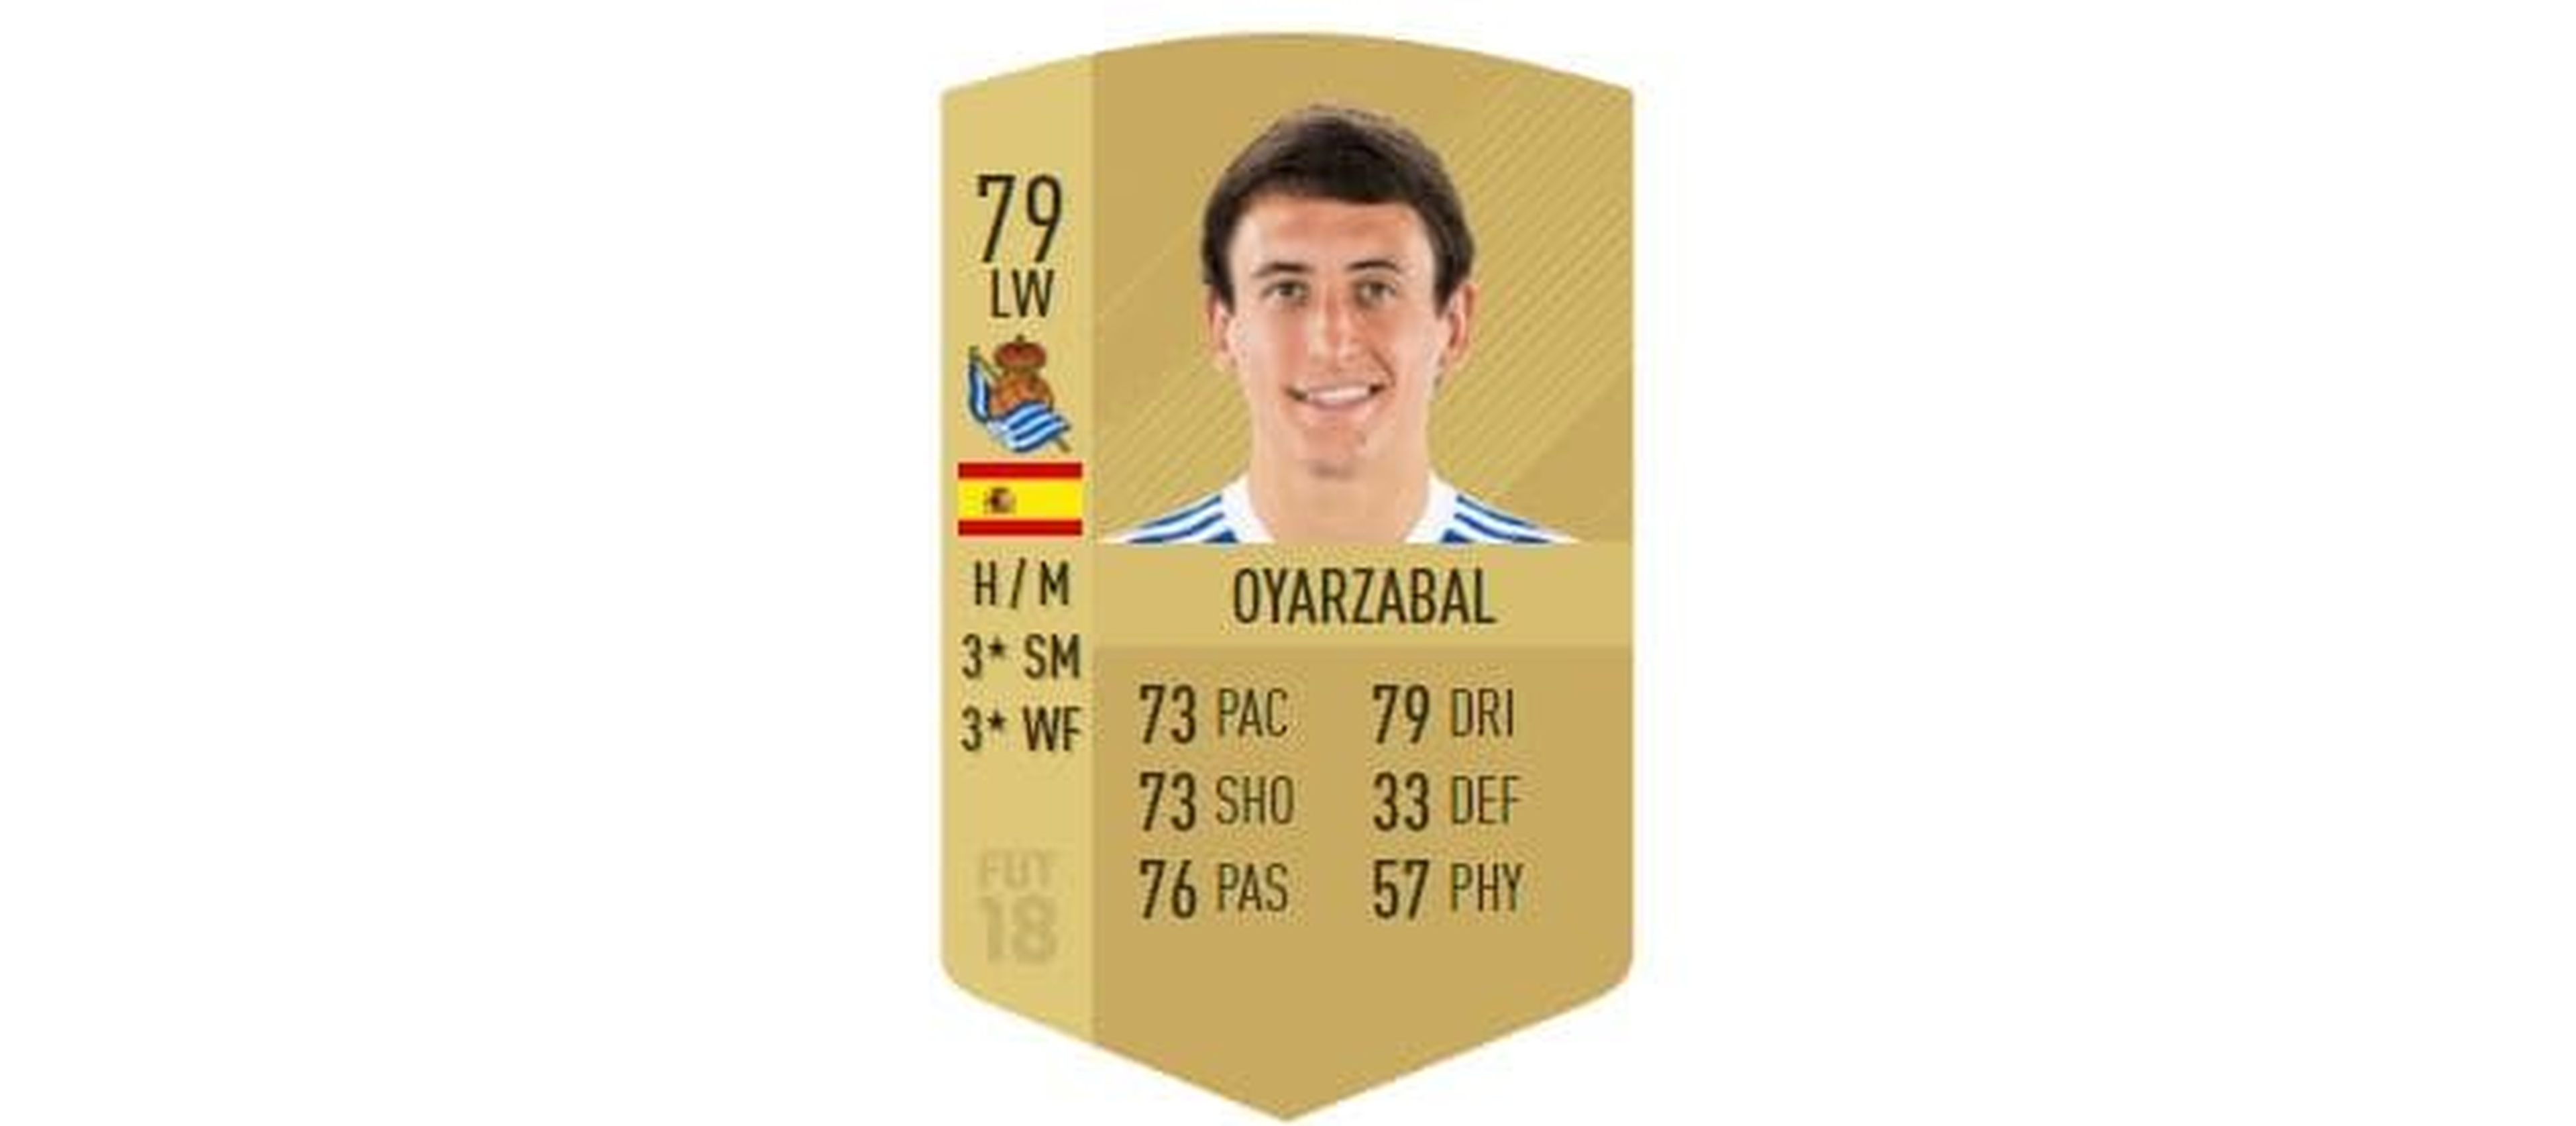 FIFA 18 - Oyarzabal